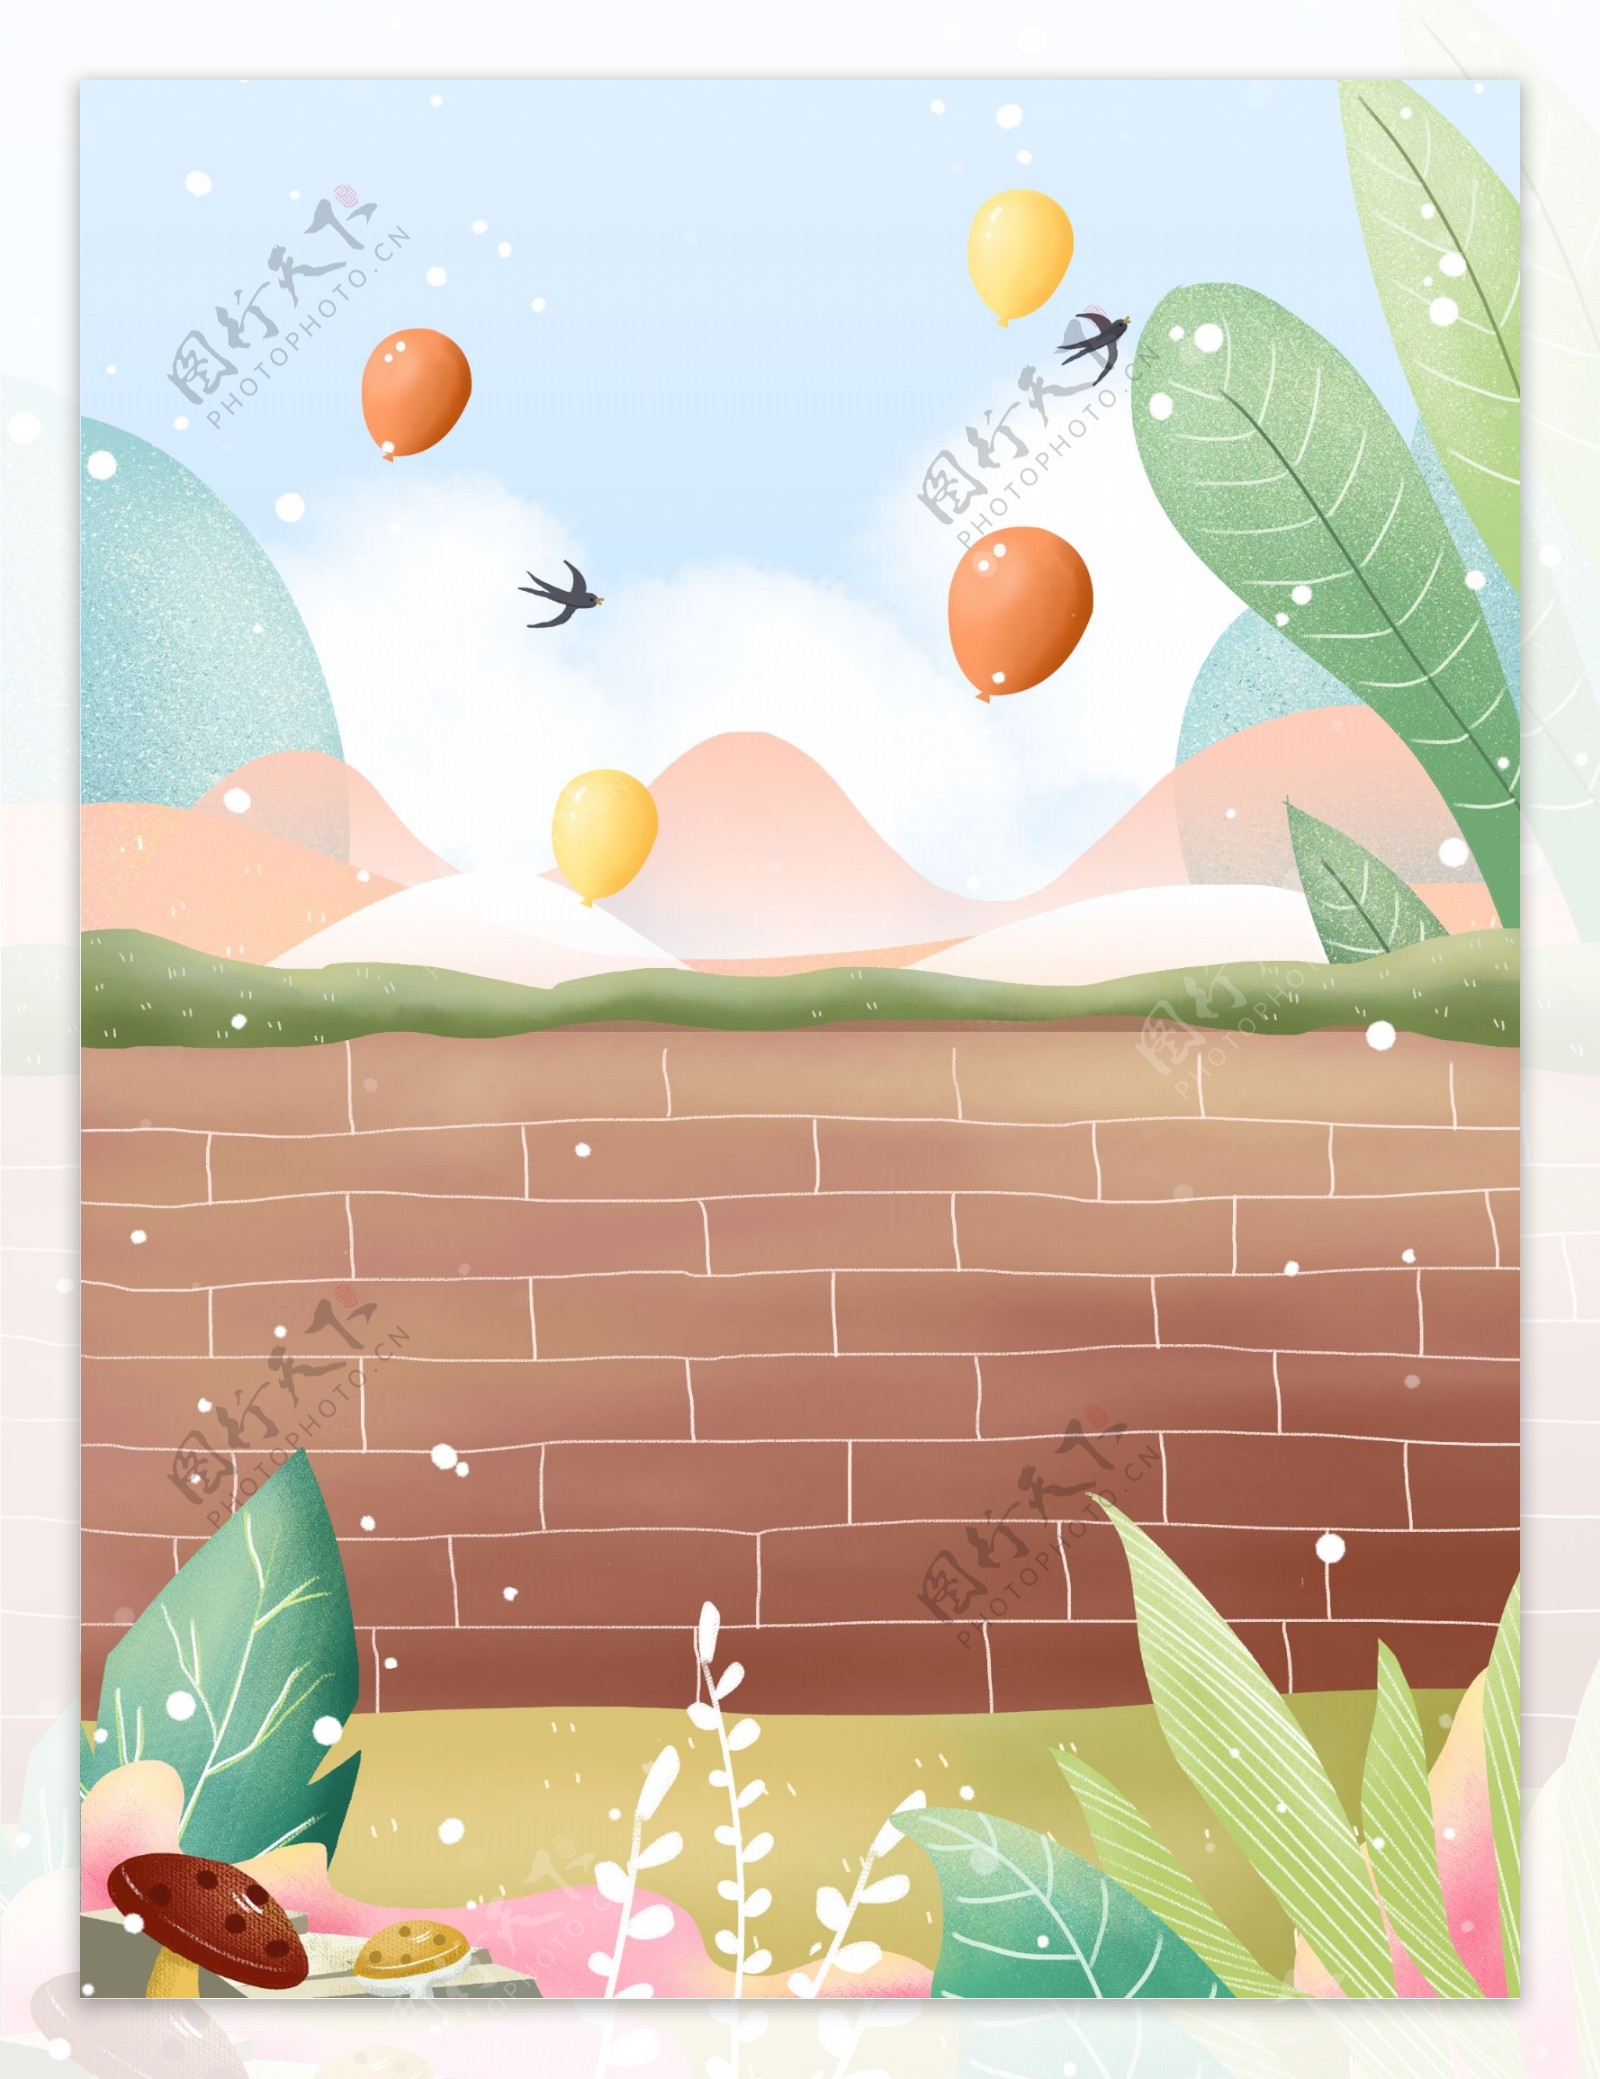 彩绘夏季气球花丛背景素材